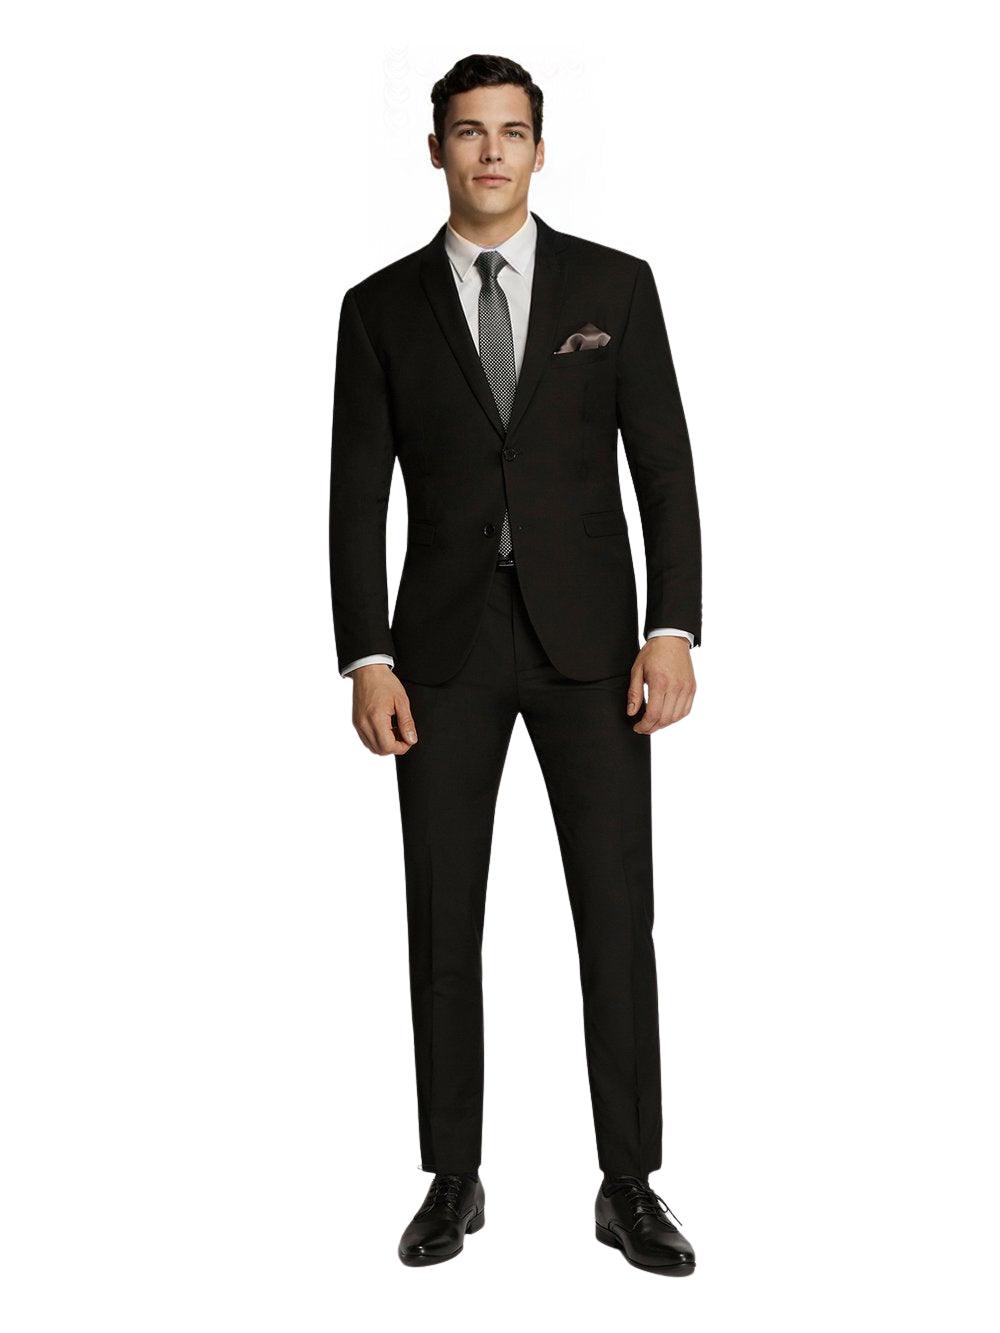 Men's Formal Business Wedding Black Plain Slim Fit Suit